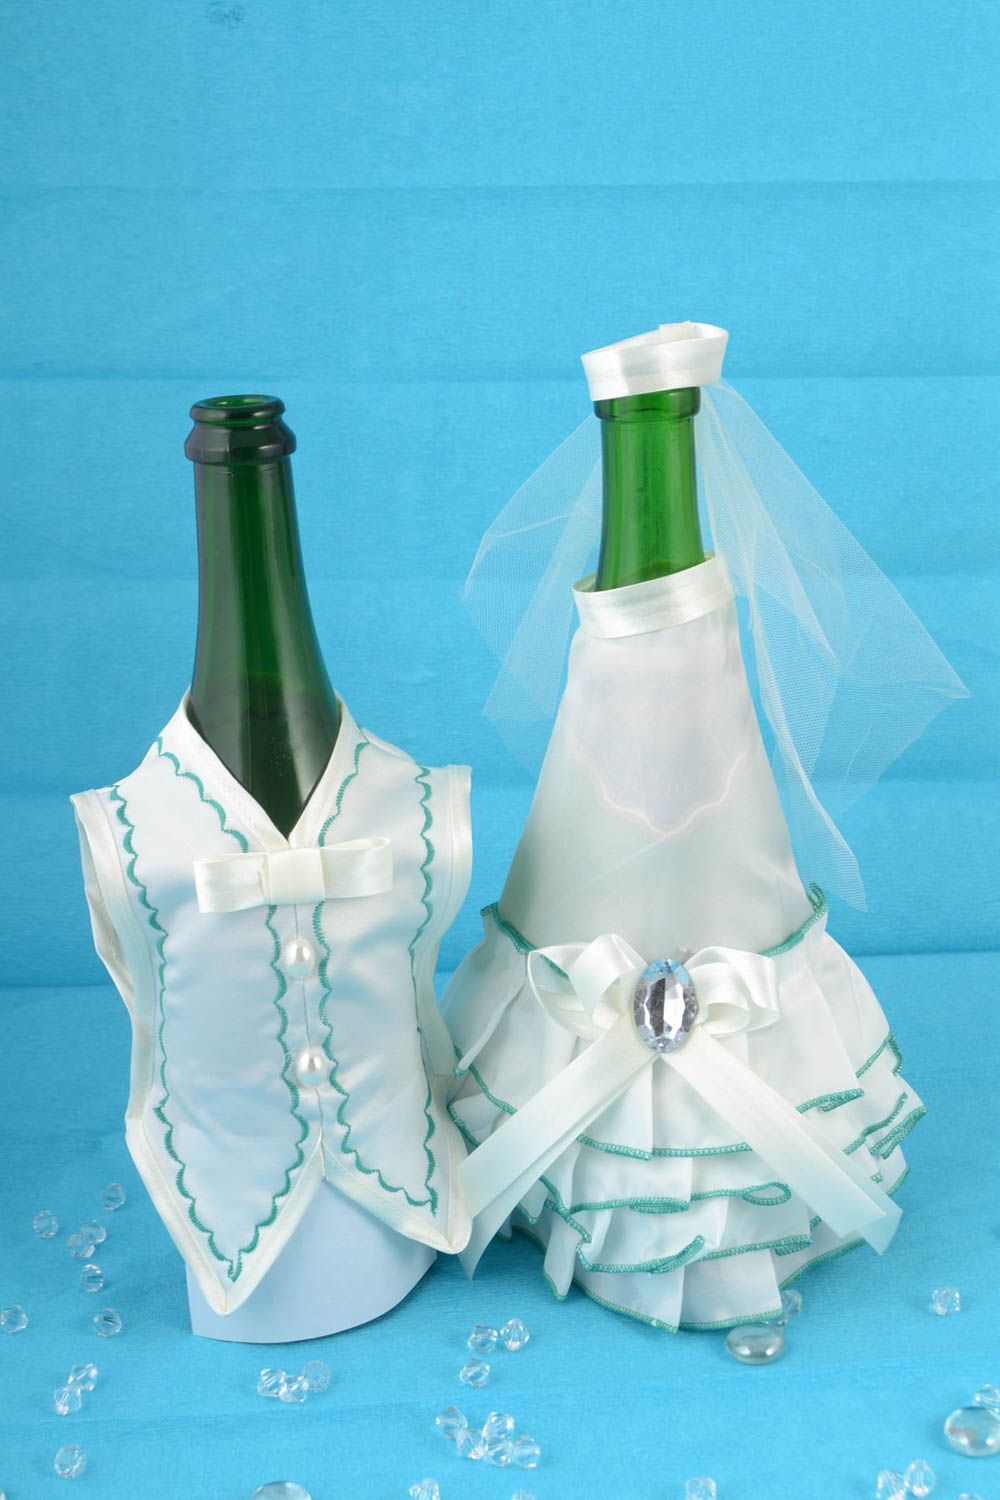 Одежда жених и невеста на бутылки шампанского белые с зеленым красивые хэнд мейд фото 1